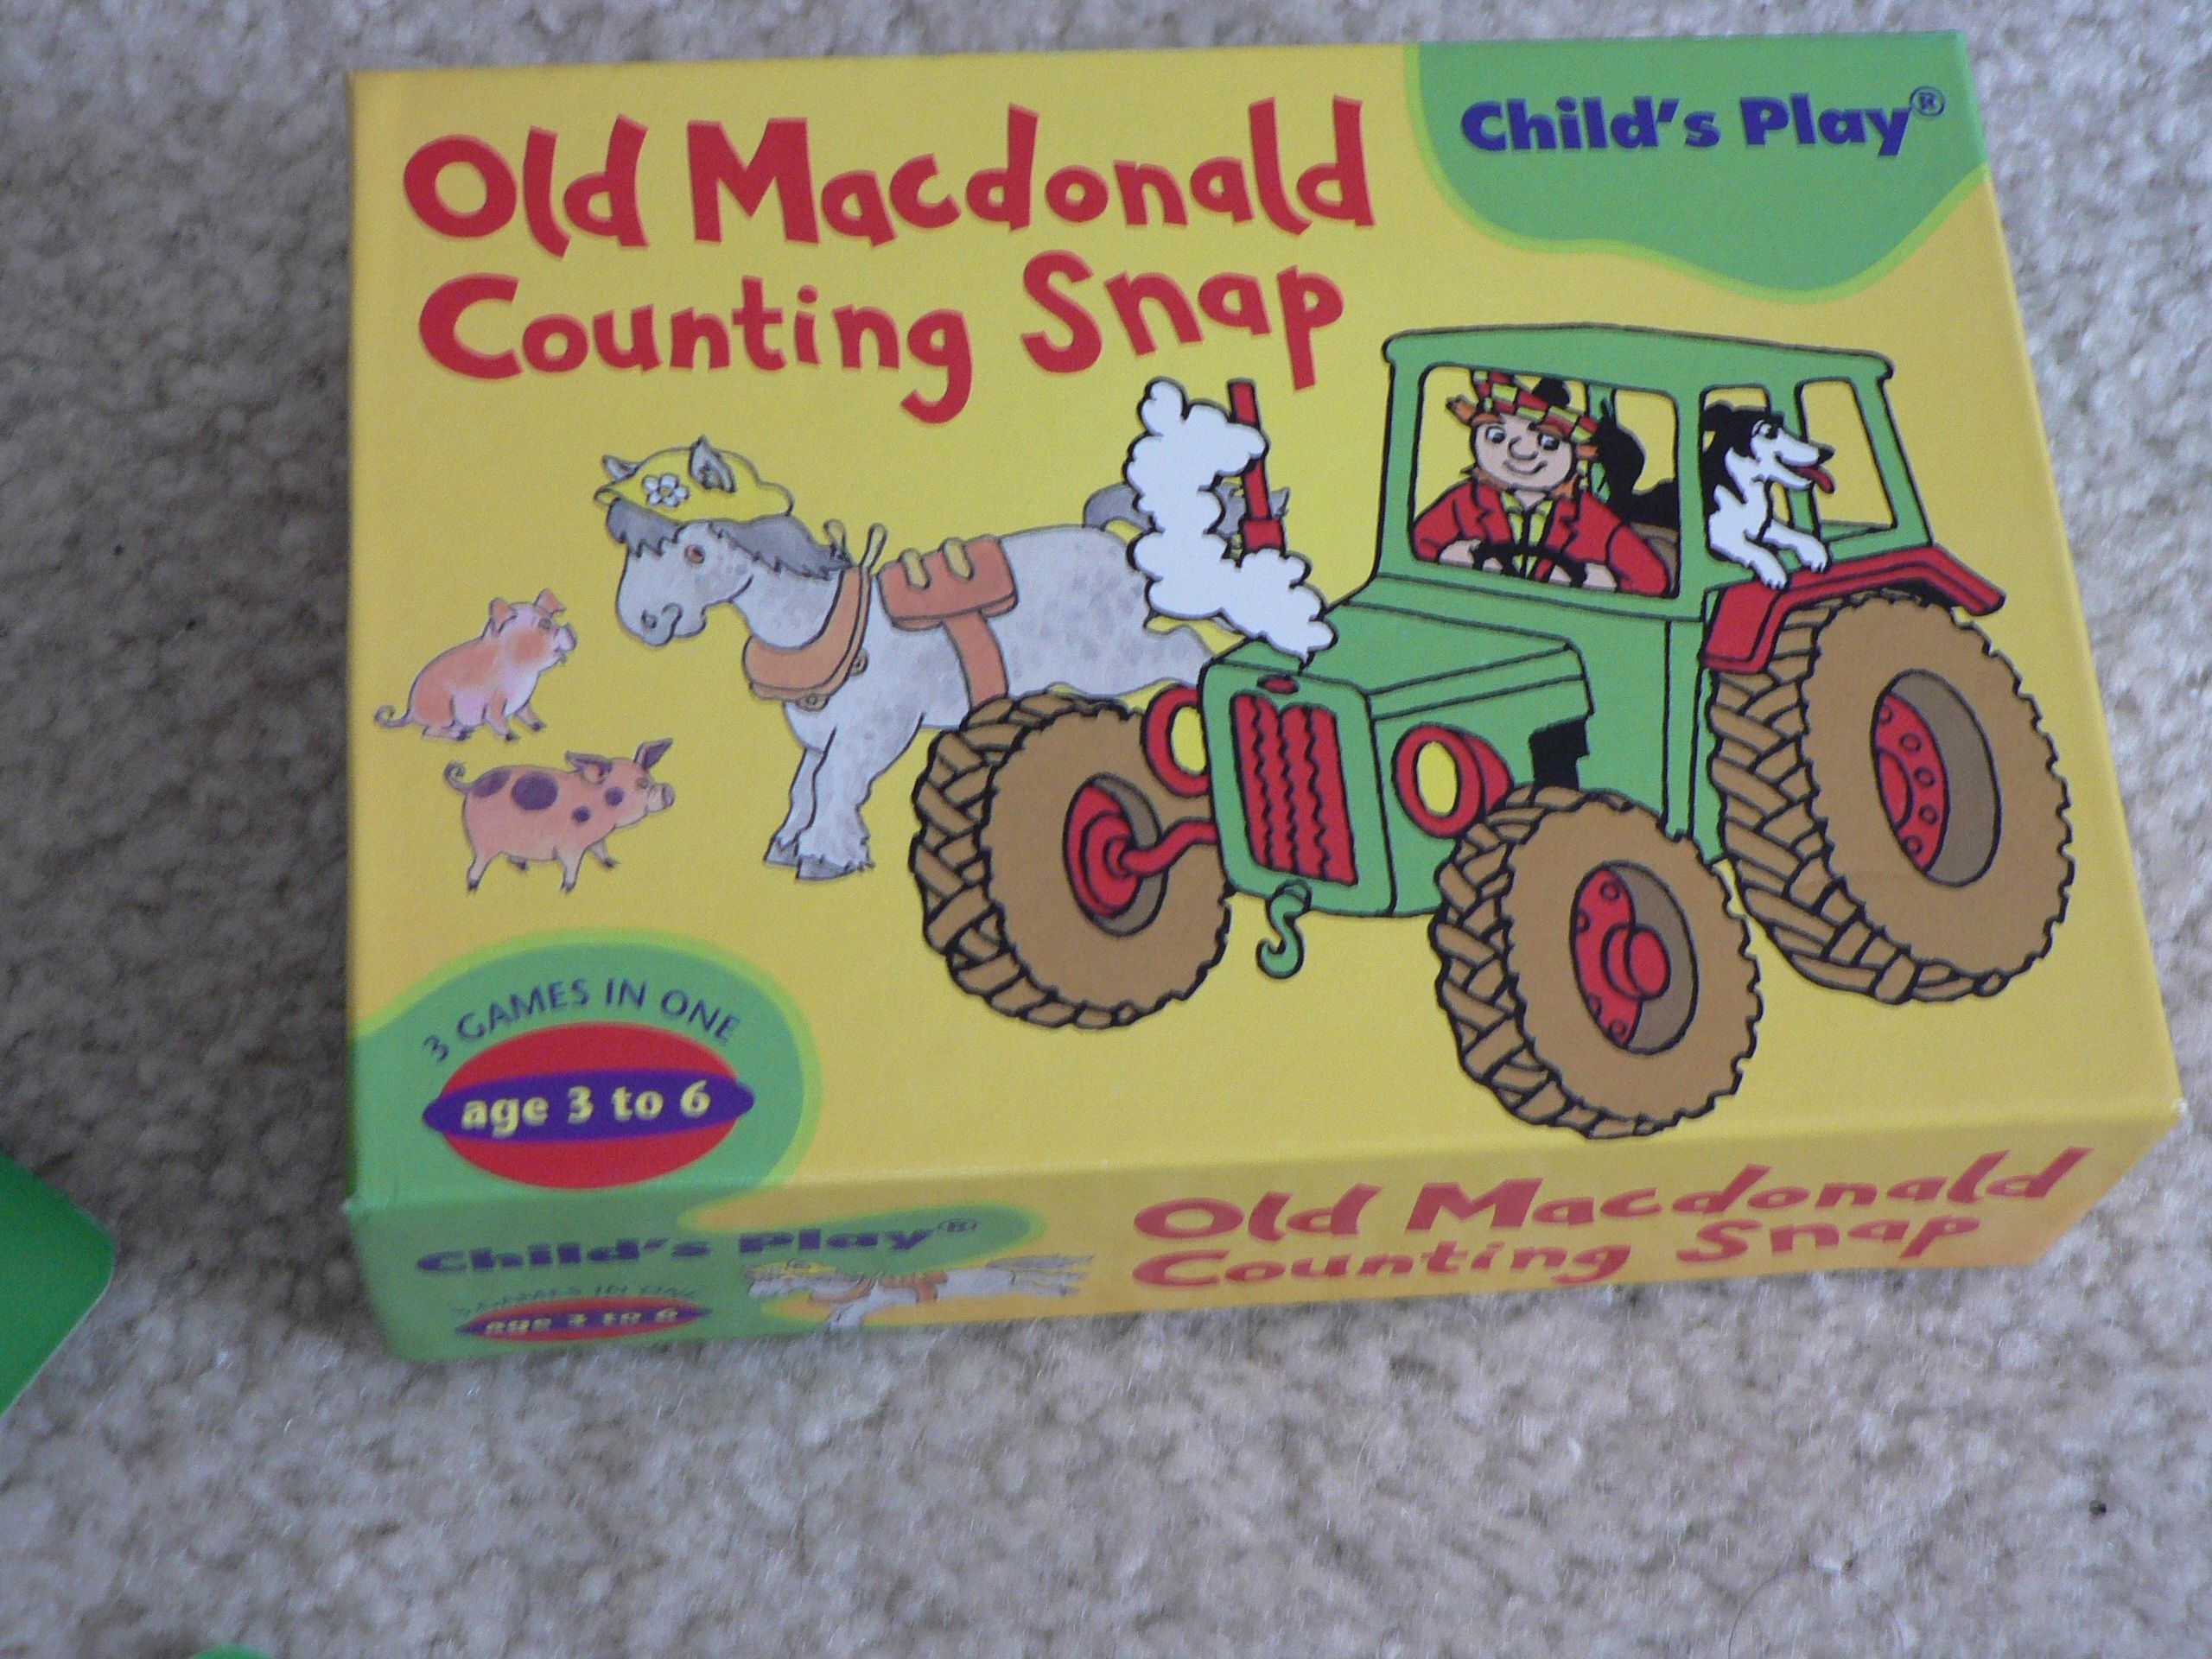 Old Macdonald Counting Snap